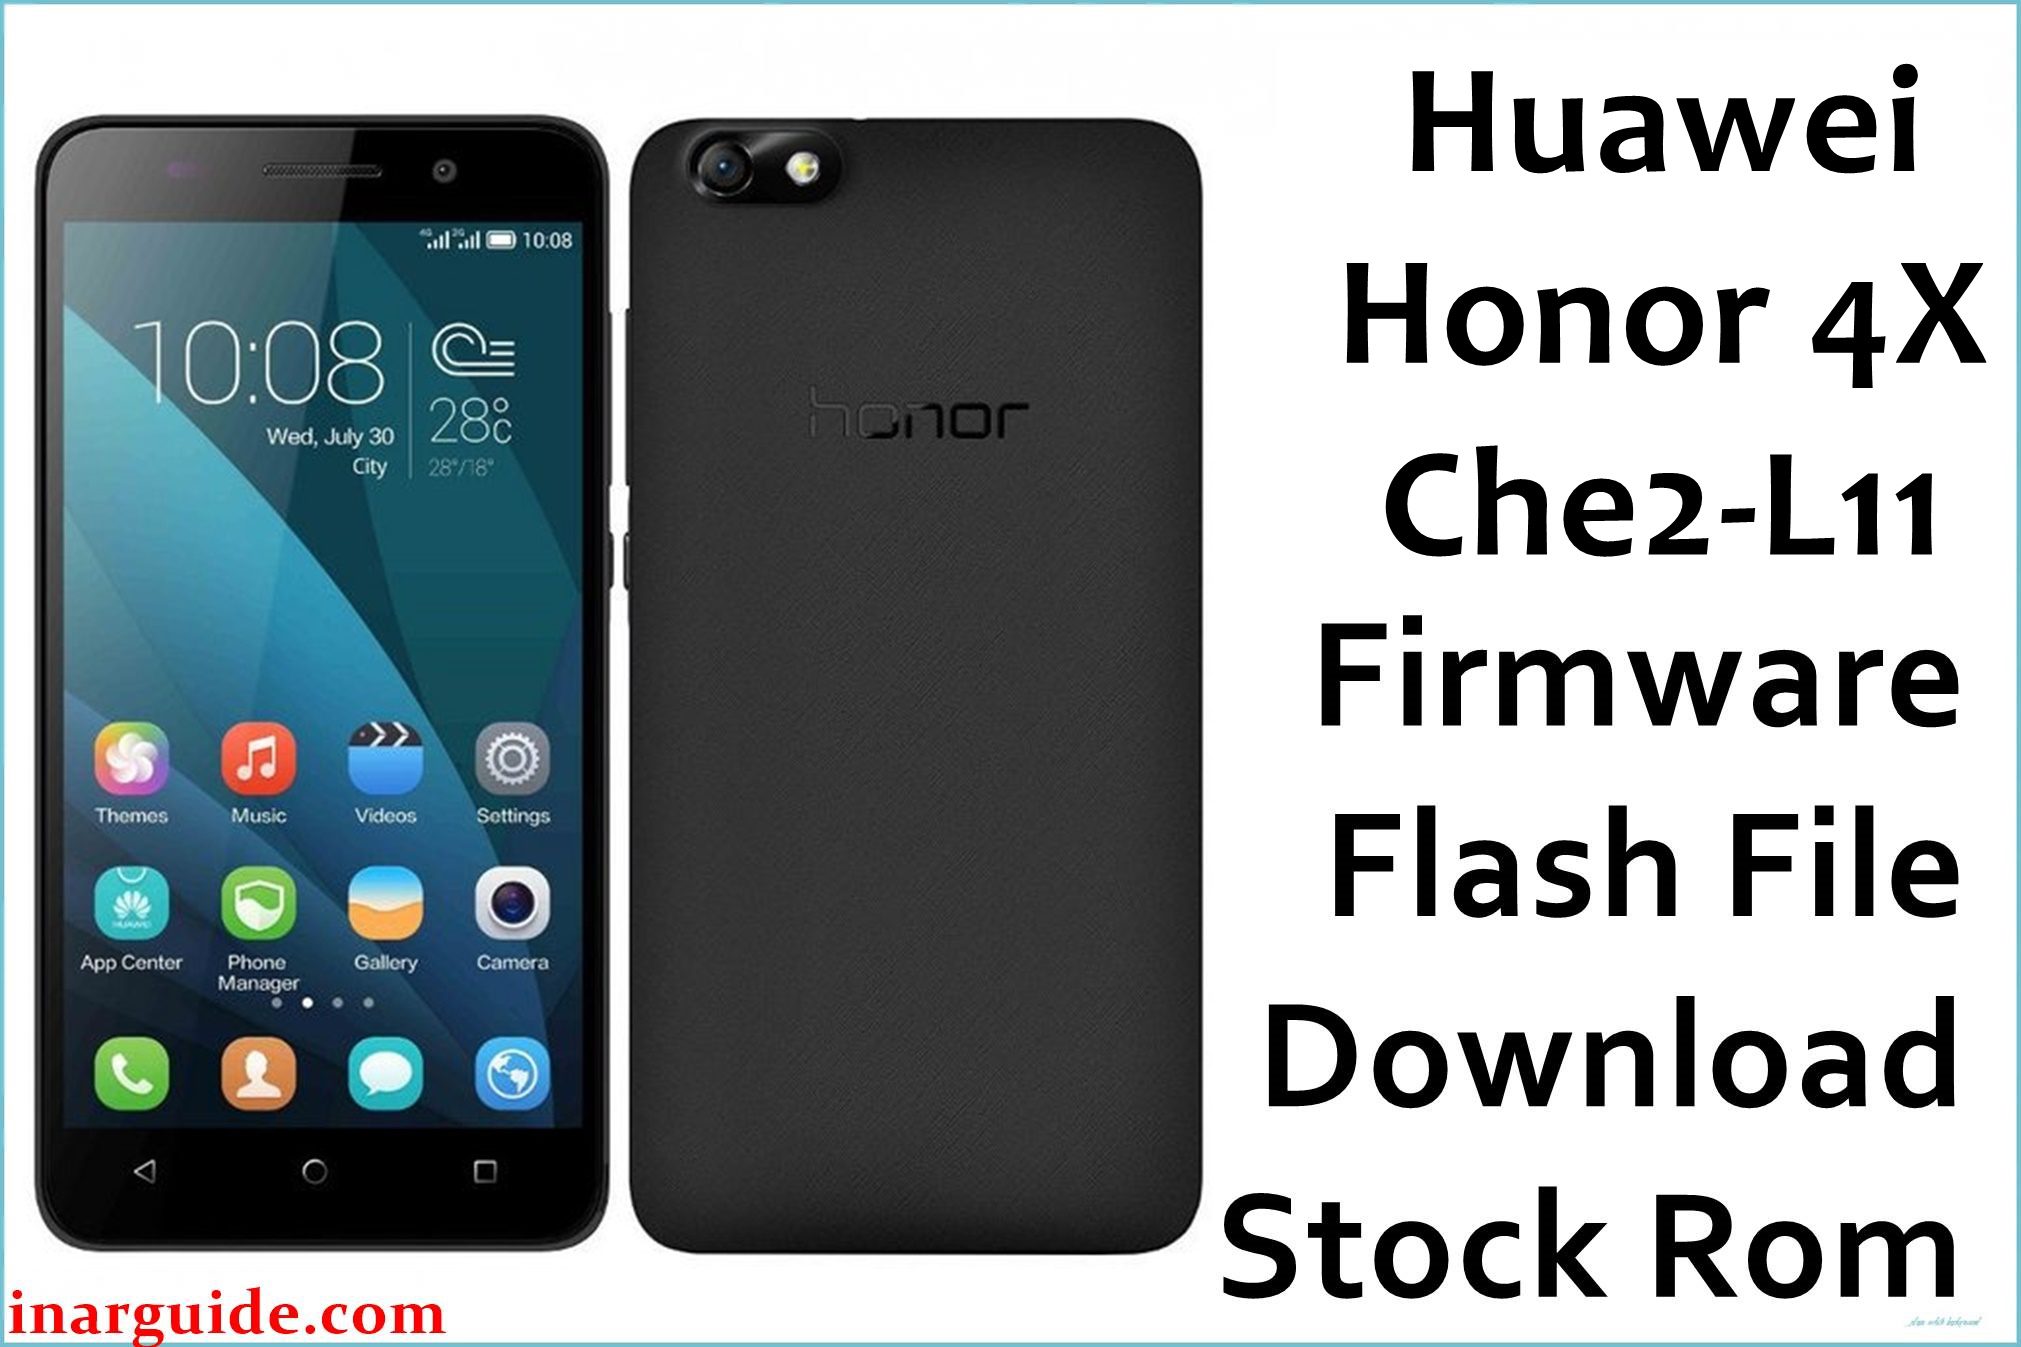 Huawei Honor 4X Che2 L11